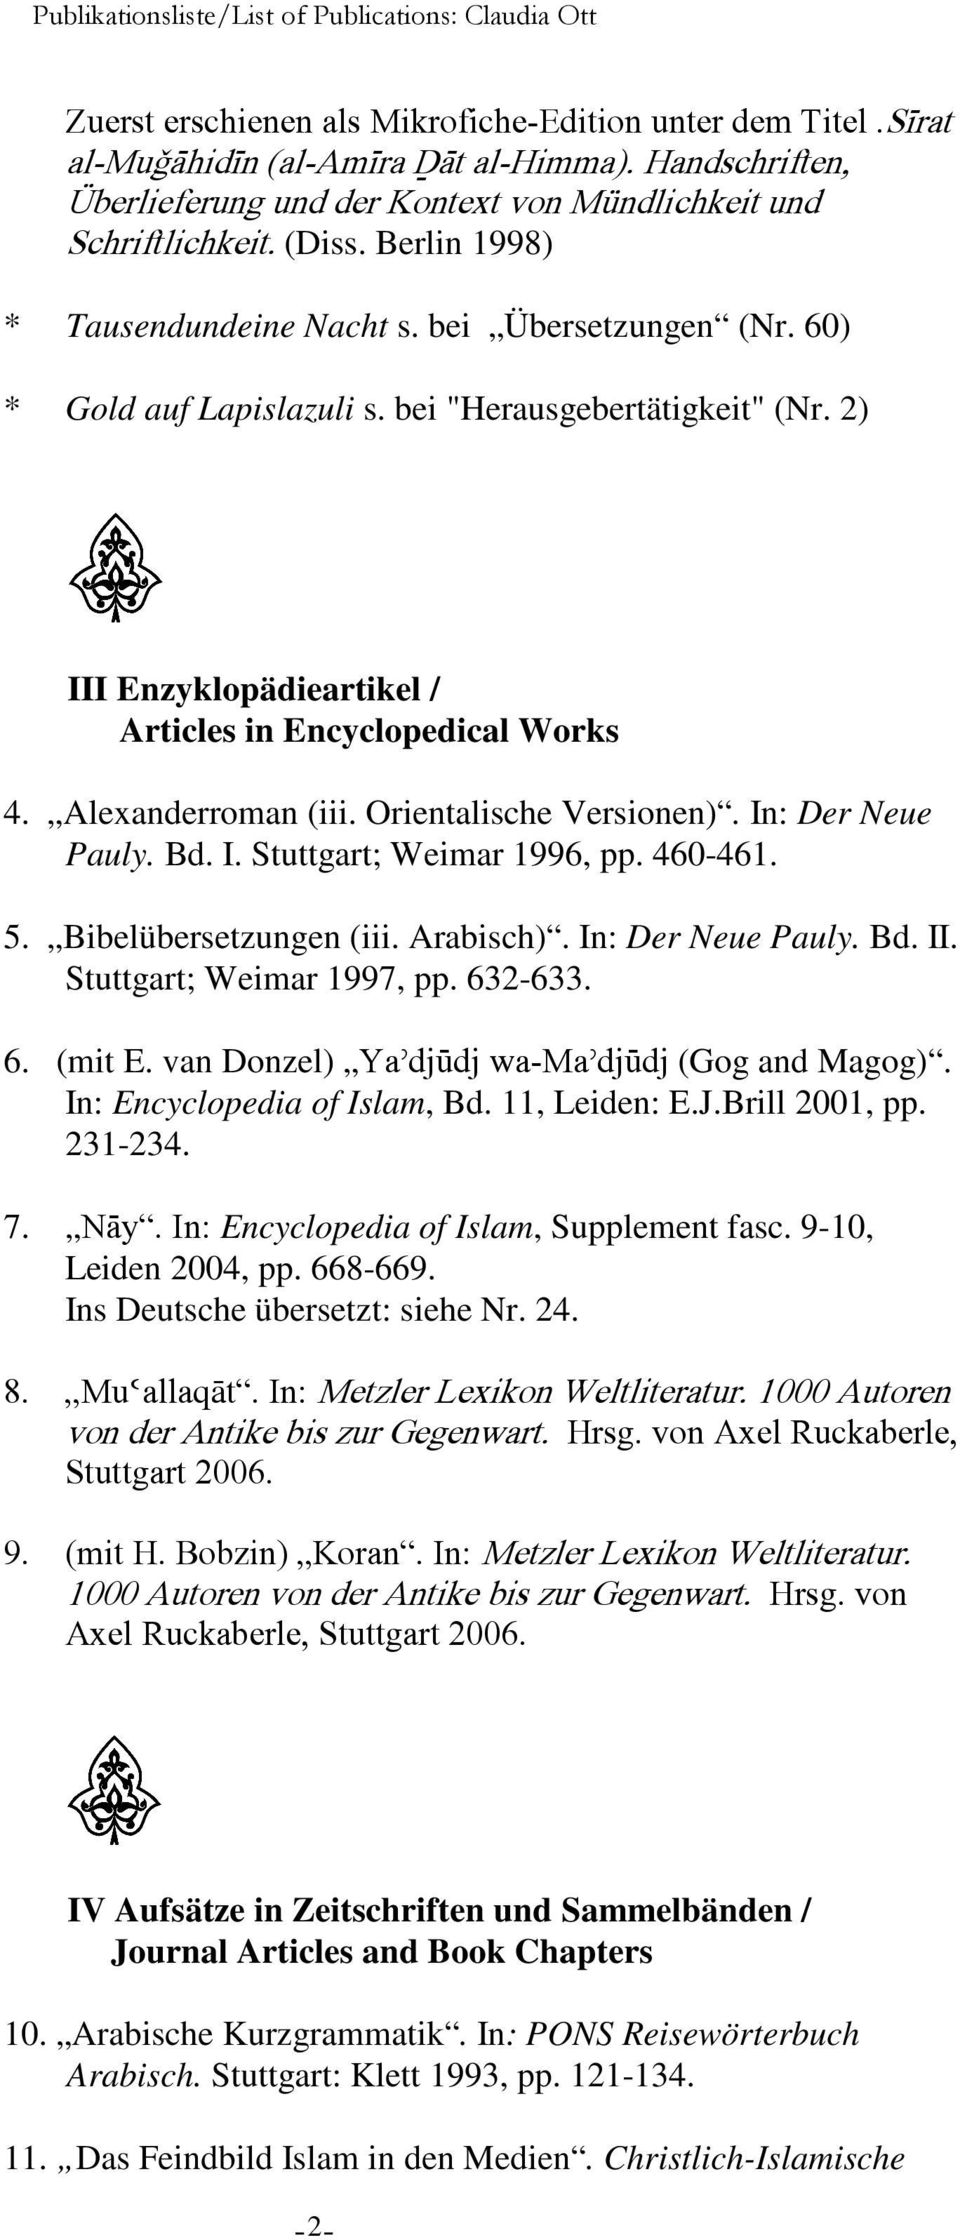 Alexanderroman (iii. Orientalische Versionen). In: Der Neue Pauly. Bd. I. Stuttgart; Weimar 1996, pp. 460-461. 5. Bibelübersetzungen (iii. Arabisch). In: Der Neue Pauly. Bd. II.